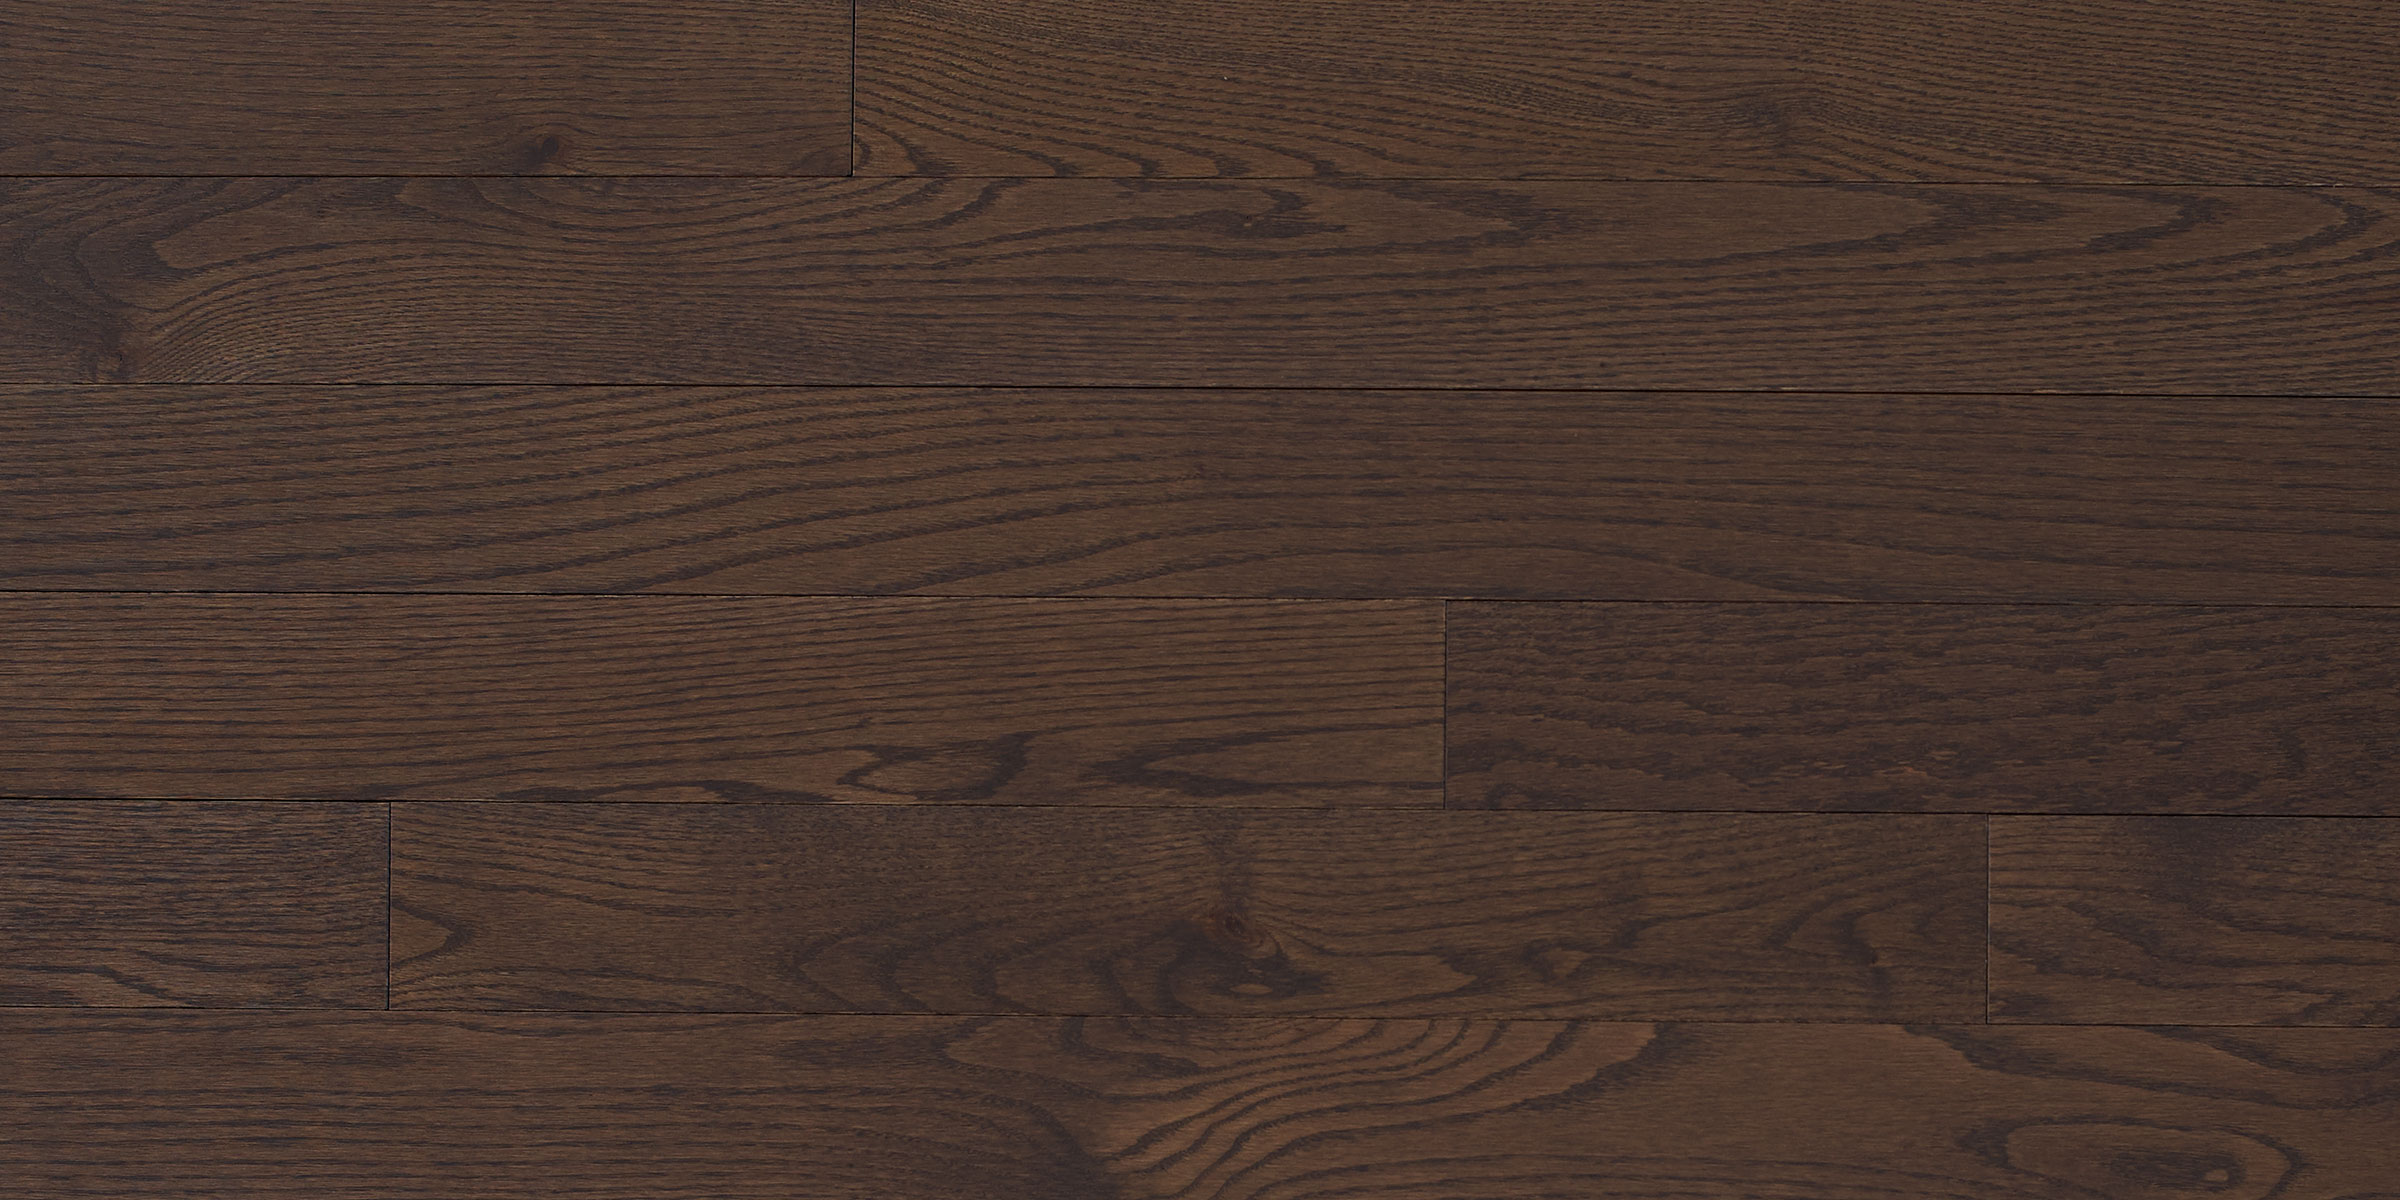 Appalachian Flooring A Tradition Of, Dark Hardwood Floor Samples